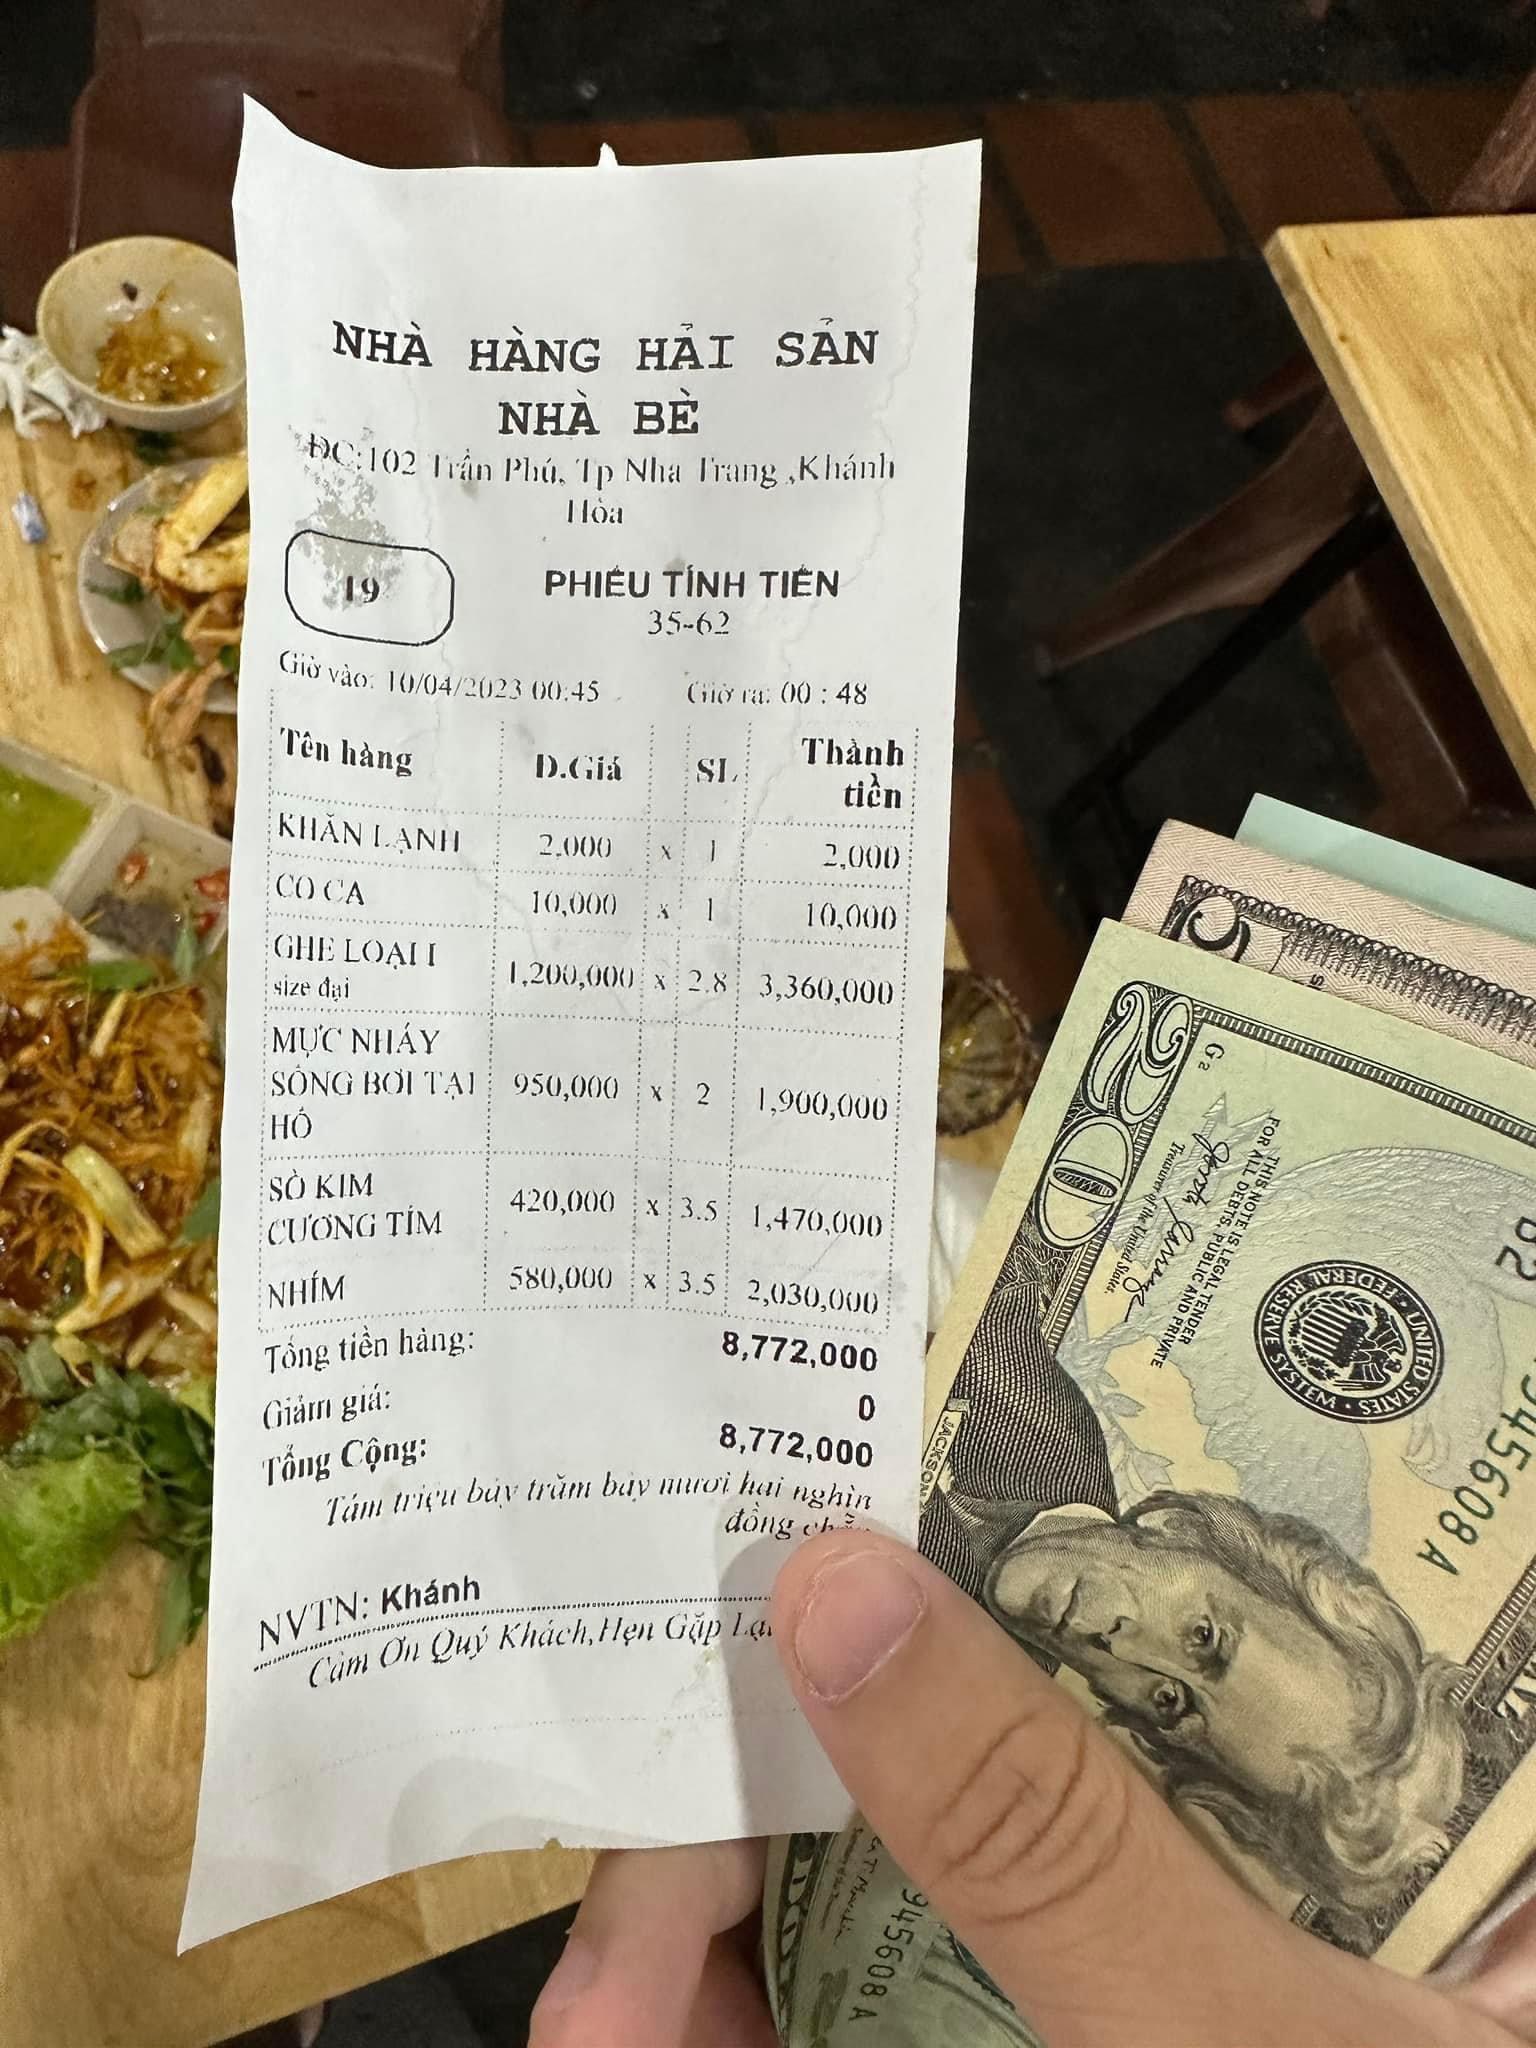 Hóa đơn Nhà hàng hải sản Nhà Bè do tài khoản facebook Lê Thái Sơn đăng lên mạng để tố cáo nhà hàng "chặt chém"